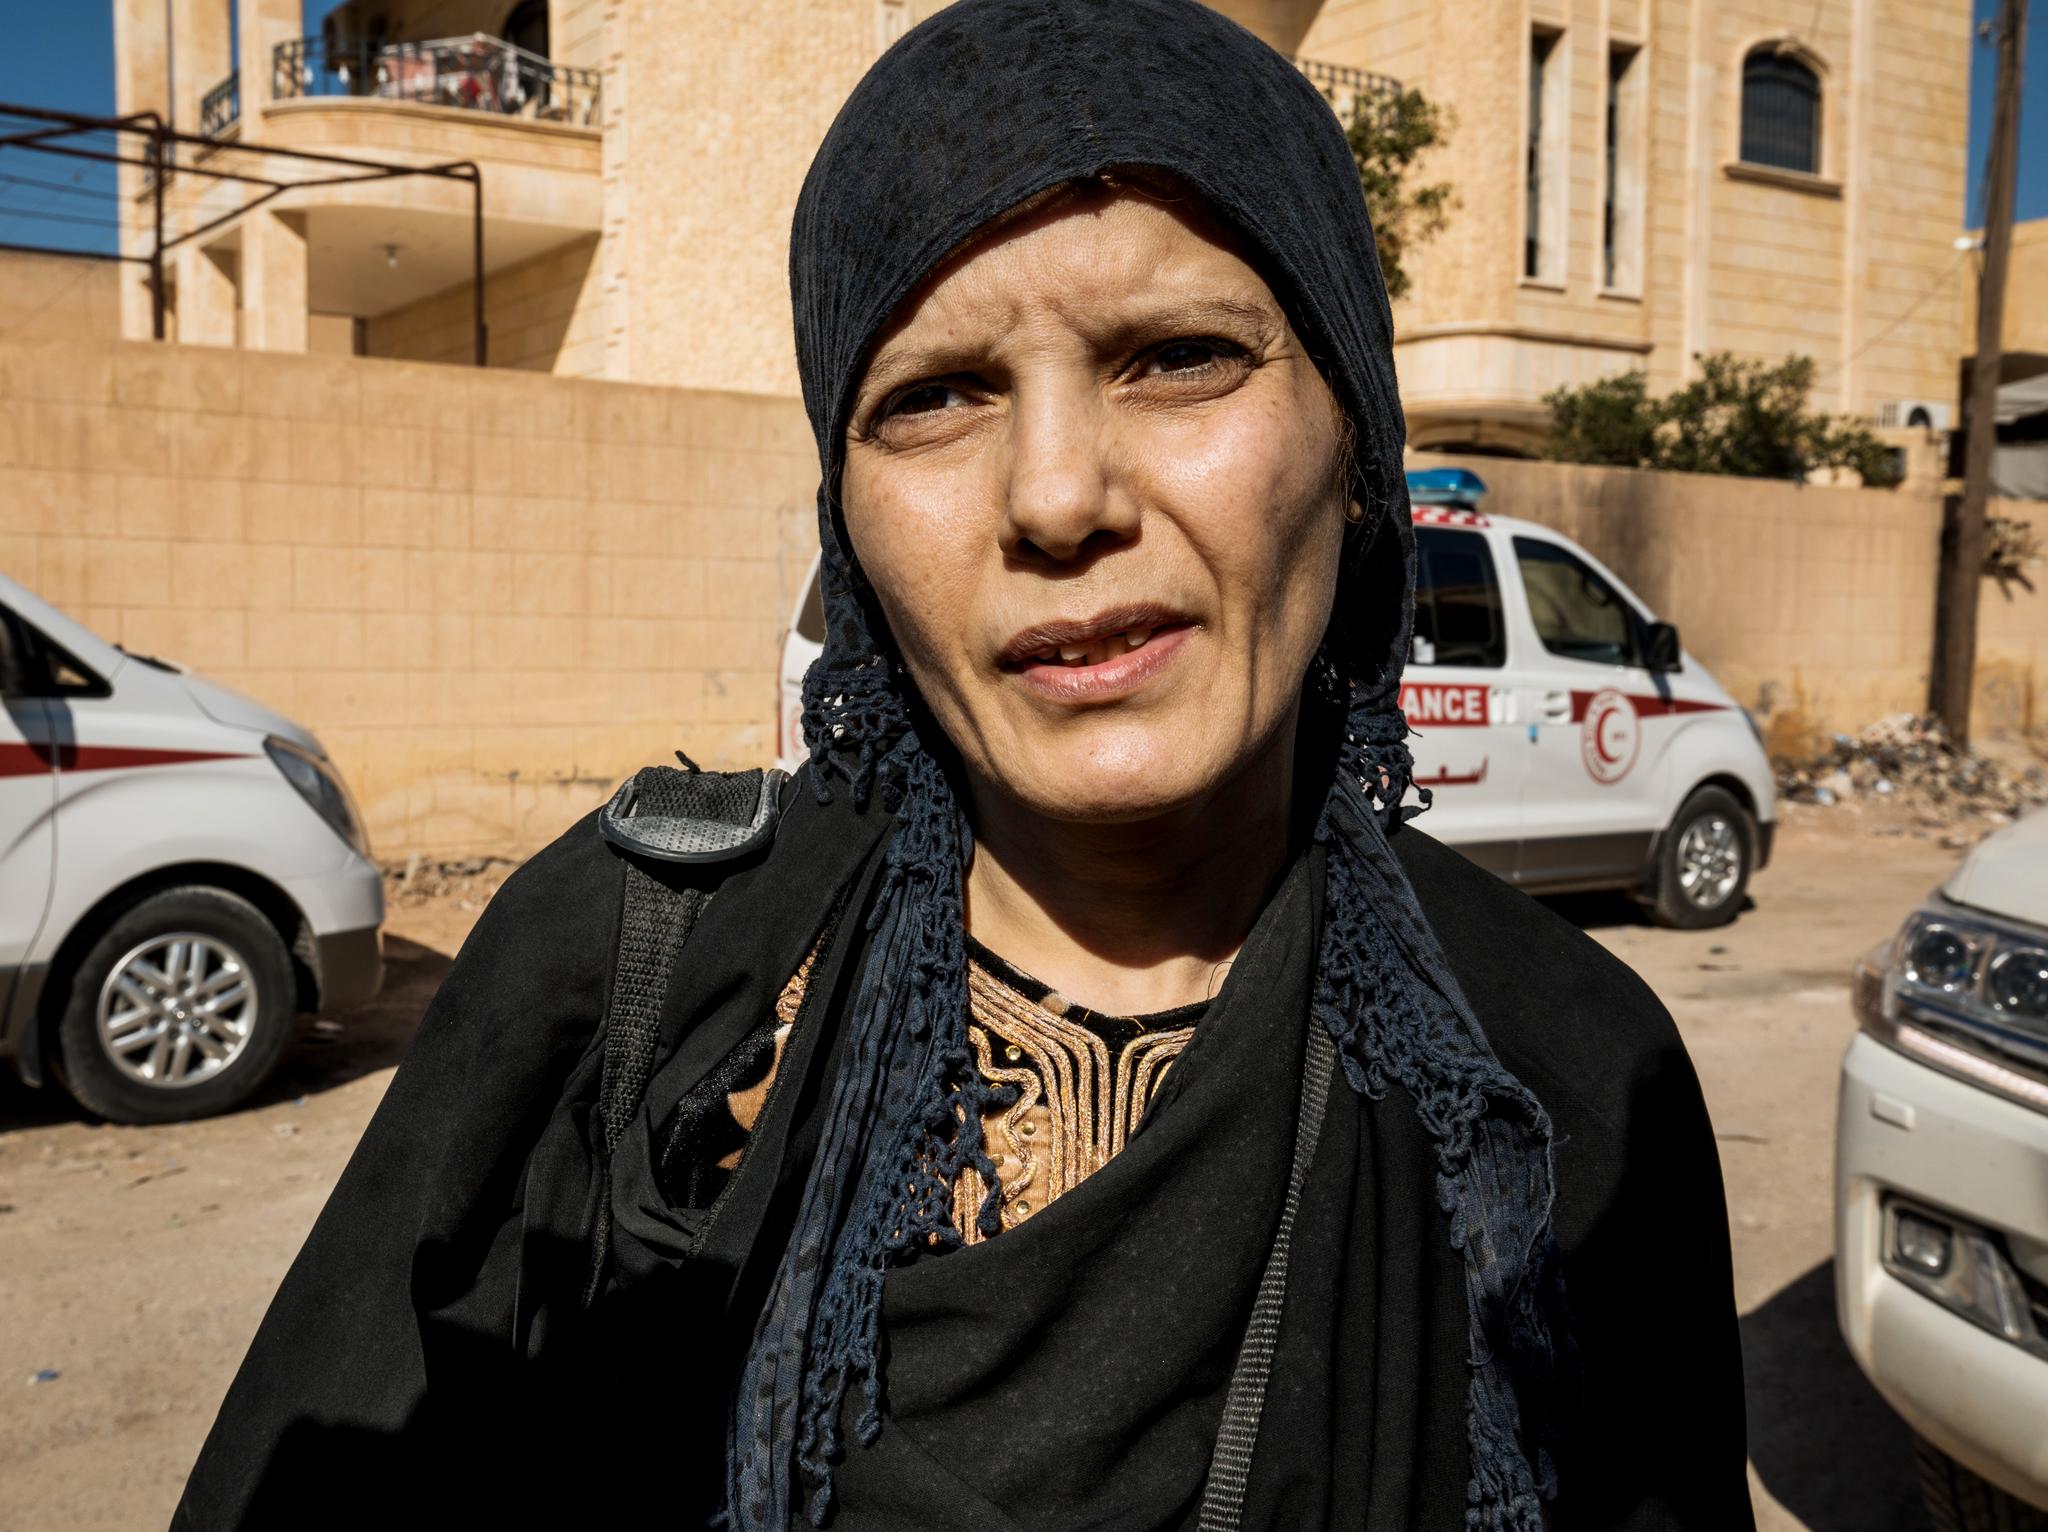 Denne kvinnen sier også hun er fra Belgia. Hun sier hun dro til Raqqa for å passe på datteren, som følte hun måtte bo i den islamske staten. Datteren fant etter hvert ut at drømmen hennes viste seg å være falsk, sier moren til Aftenposten.